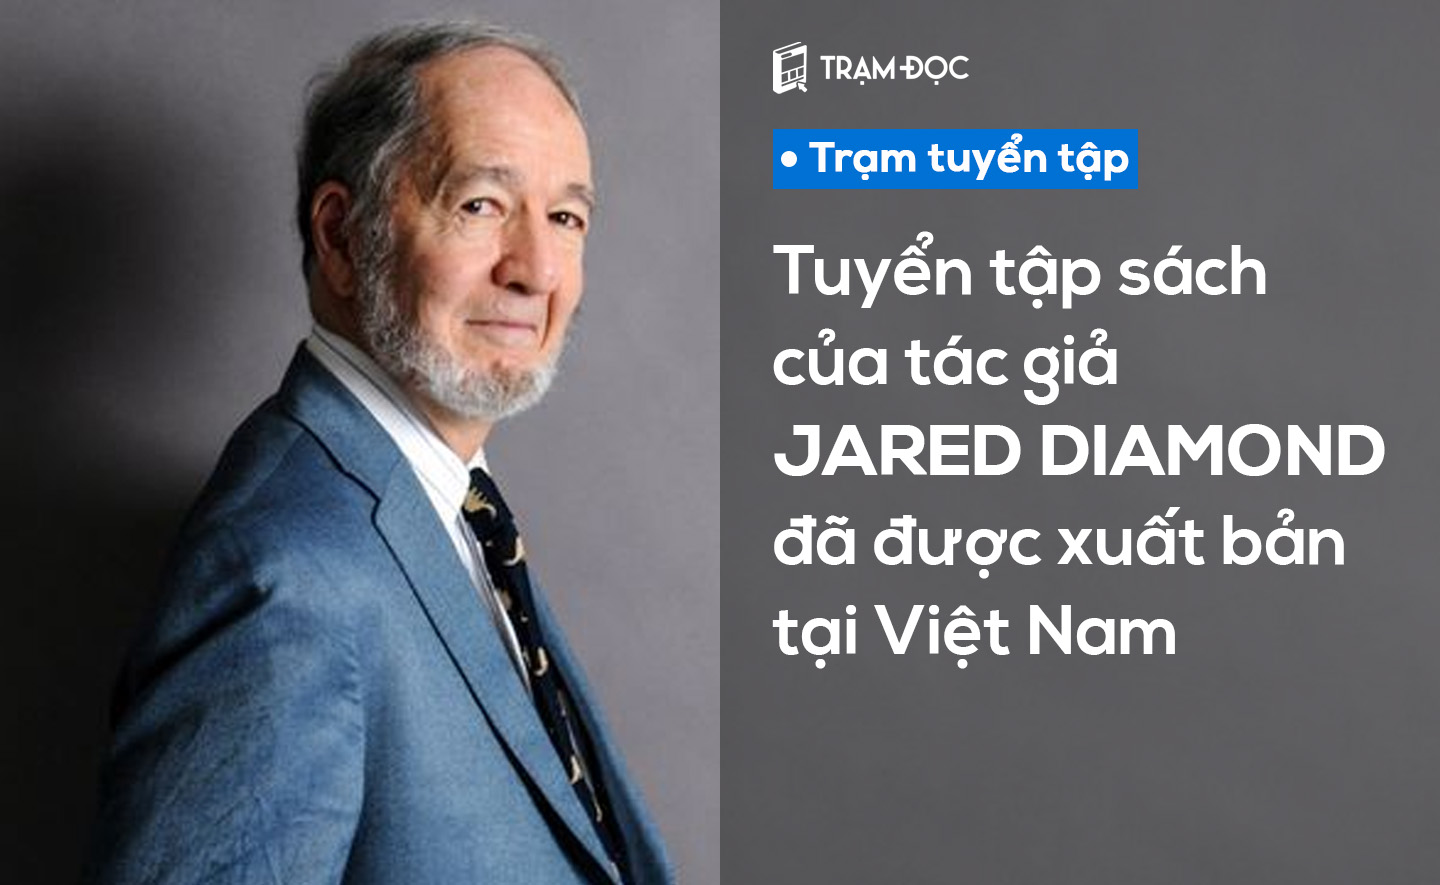 Tuyển tập sách của tác giả Jared Diamond đã được xuất bản tại Việt Nam